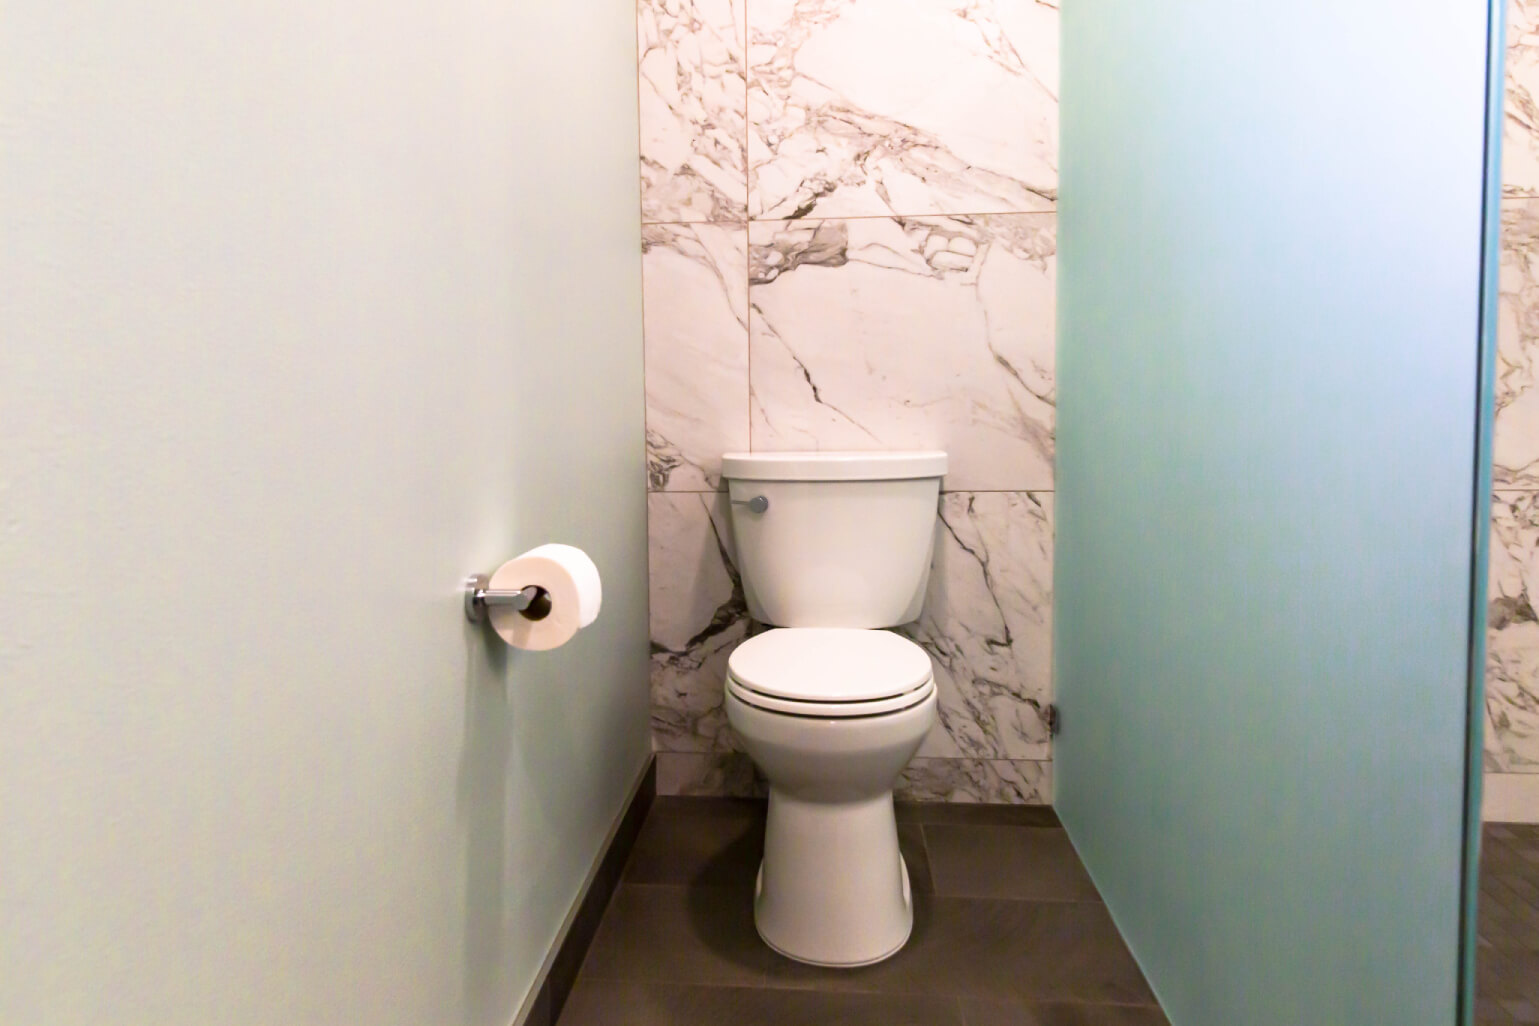 Holmes Master Bathroom Project – Snoqualmie, WA – Master Bathroom Remodel 2